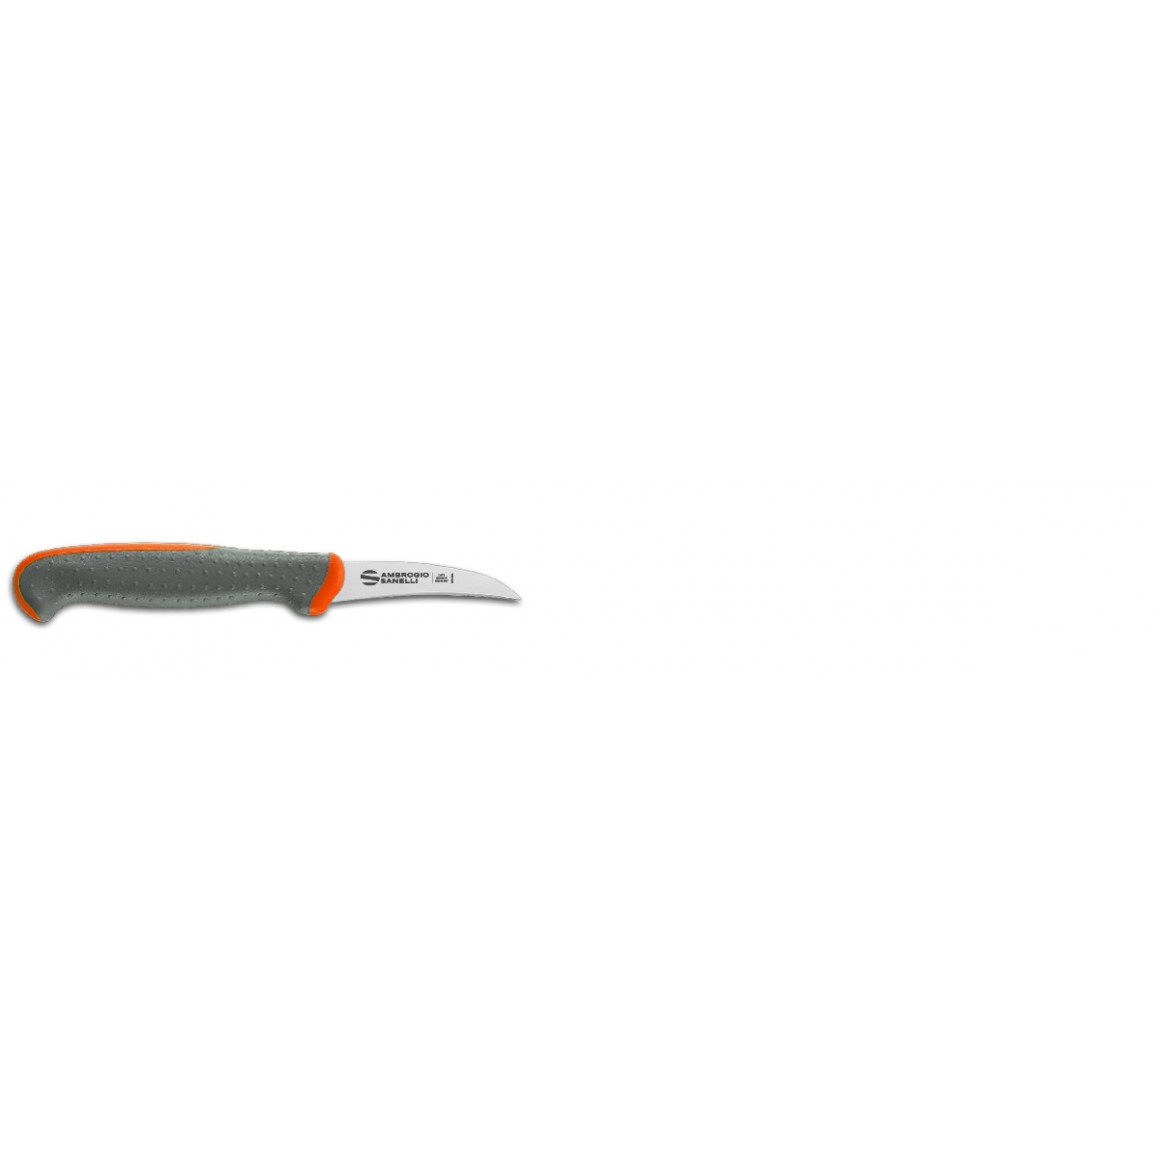 Tecna - Vegetable knife, curved blade/L7